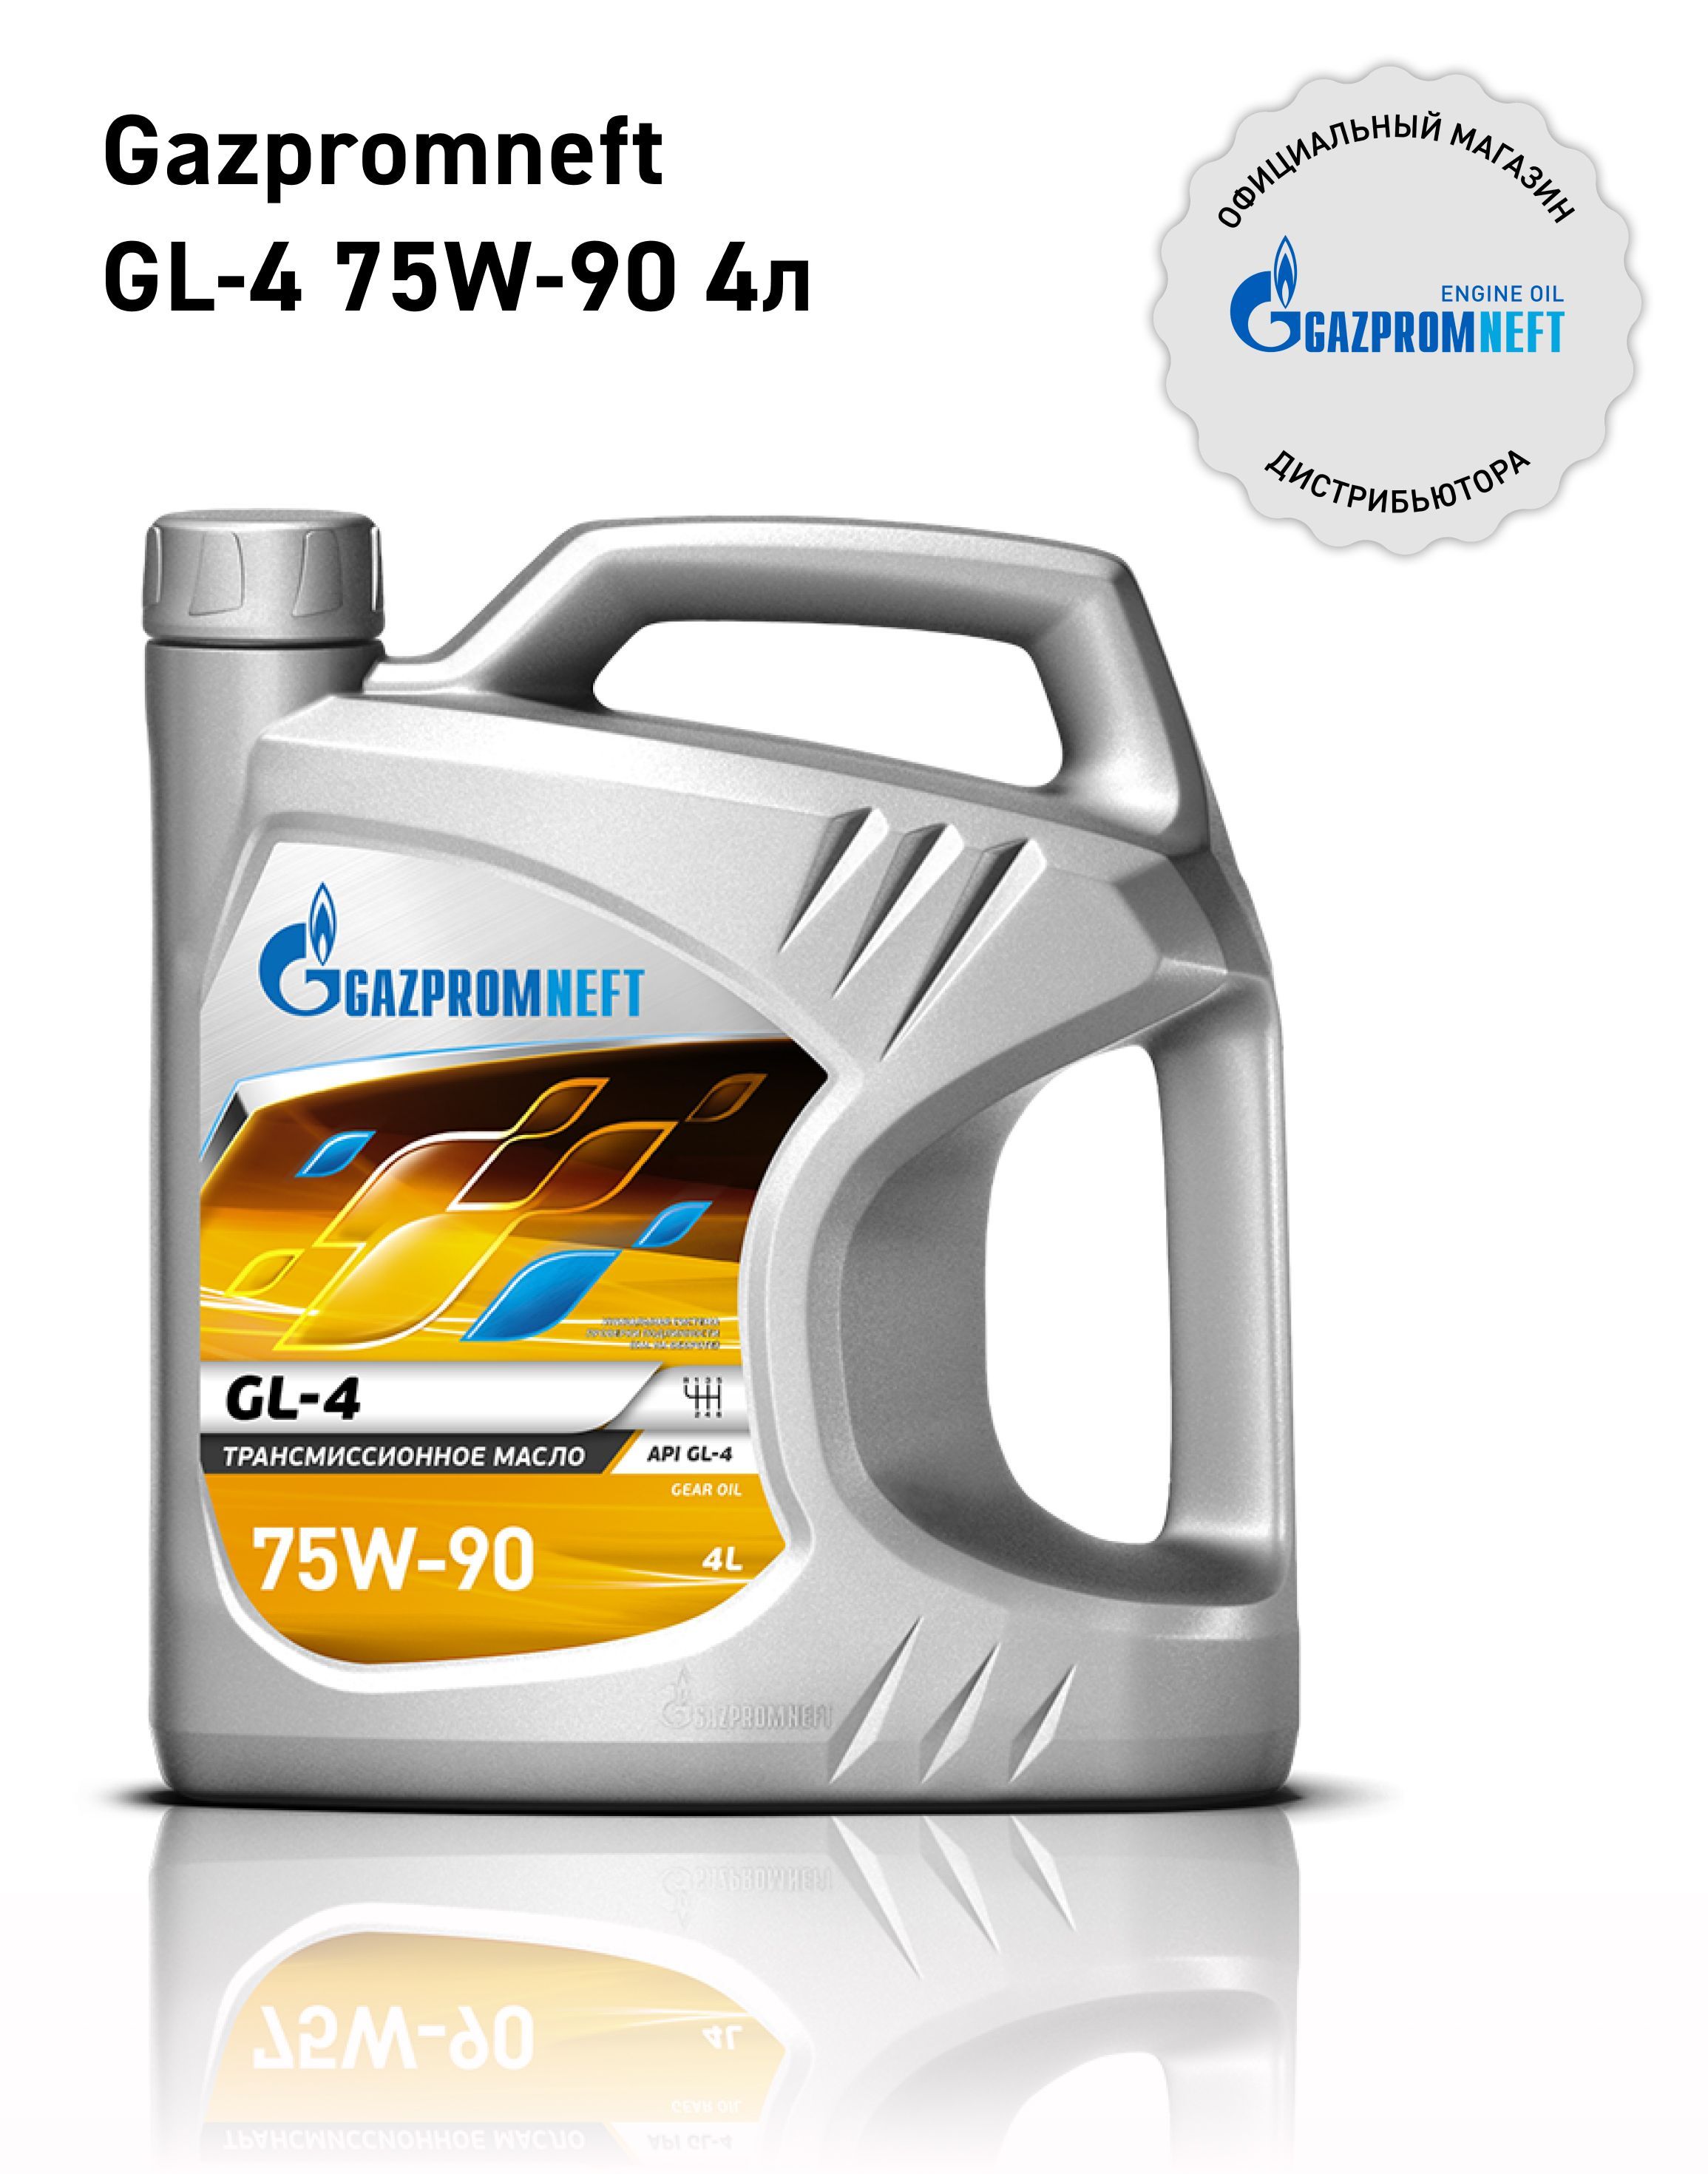 ТрансмиссионноемаслоGazpromneftGL-475W-90полусинтетическое4л